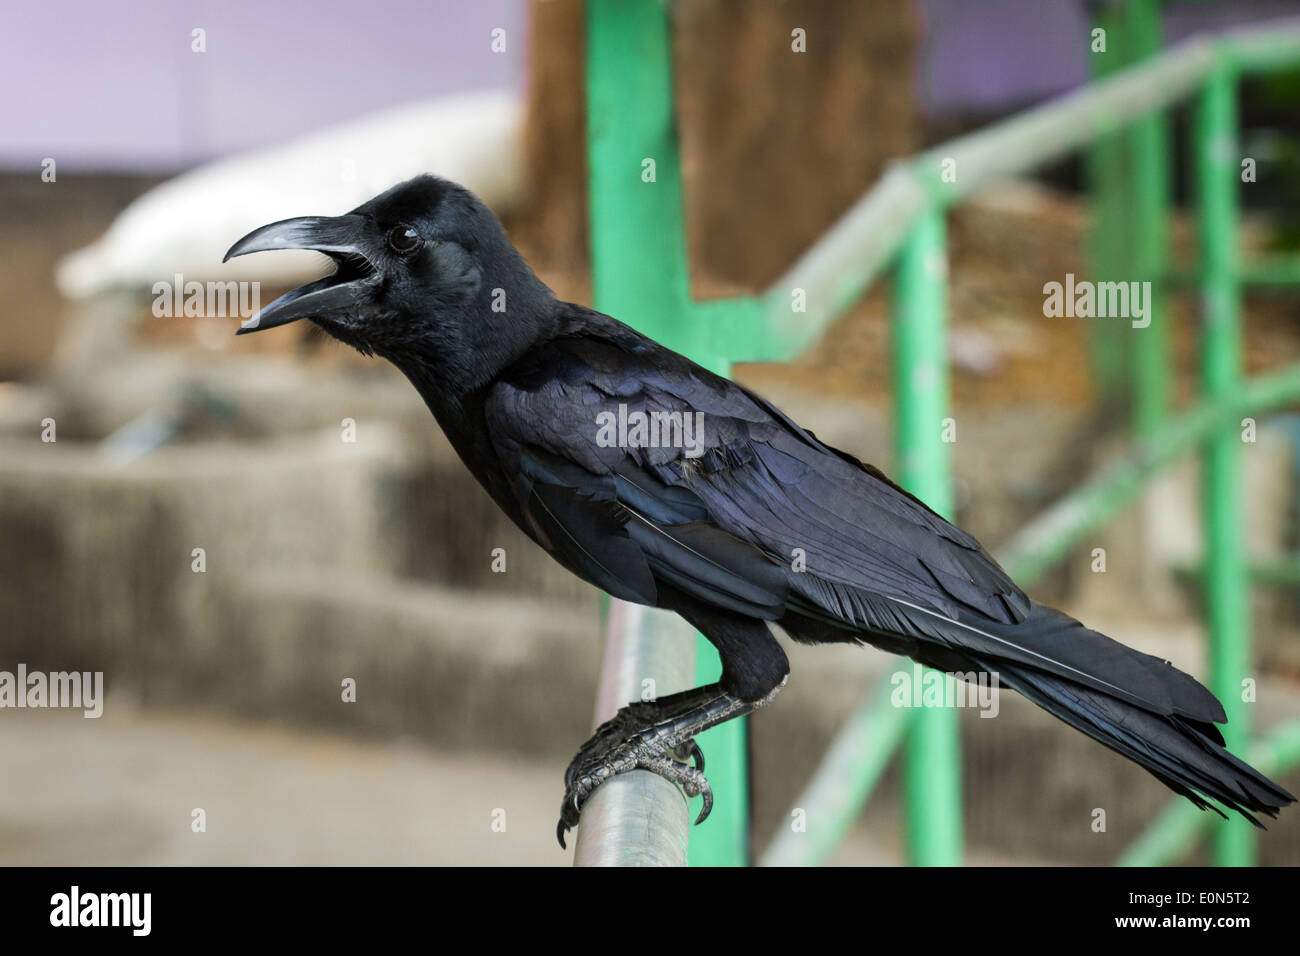 Nahaufnahme eines schwarzen Dschungel Krähe (auch bekannt als große-billed Crow oder dick-billed Crow) Vogels im freien Stockfoto